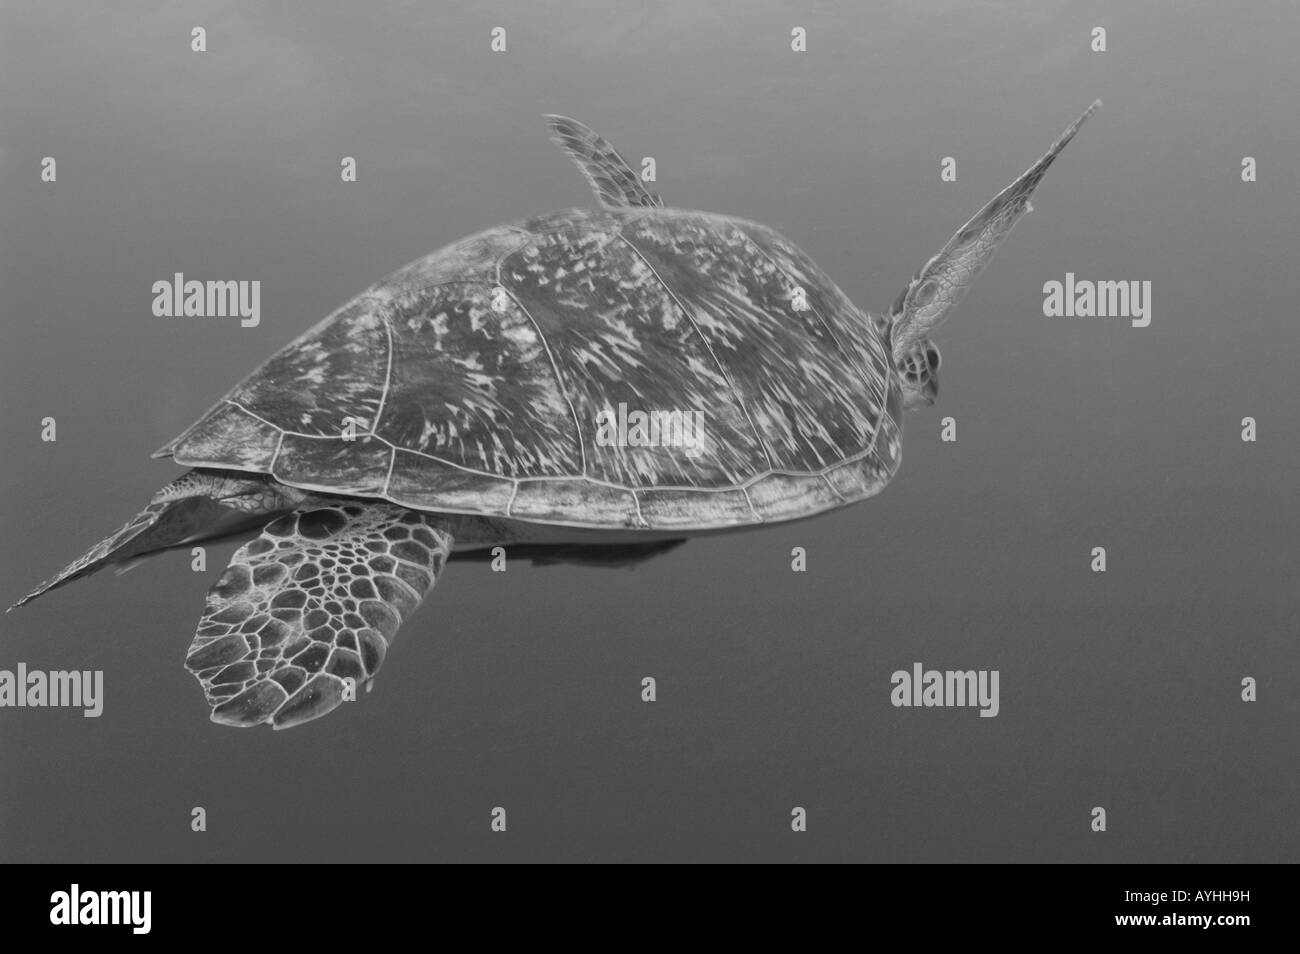 La tortue verte Chelonia mydas Gili Trawangan Lombok Indonésie Océan Pacifique En voie de disparition Banque D'Images